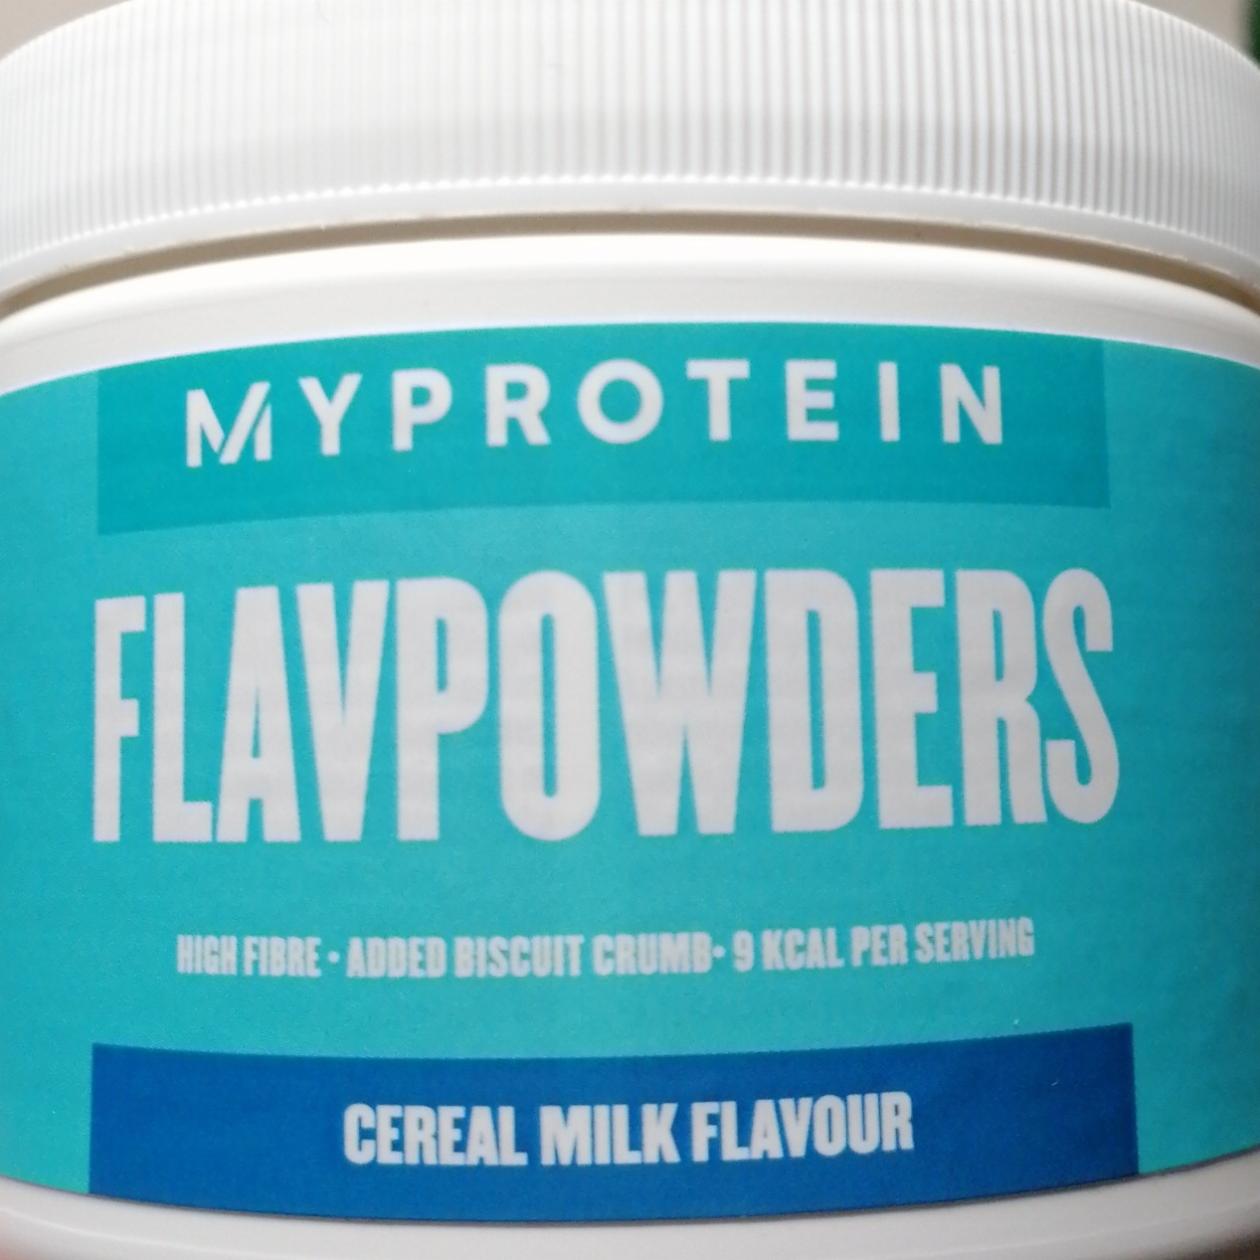 Fotografie - Flavpowders Cereal milk flavour Myprotein